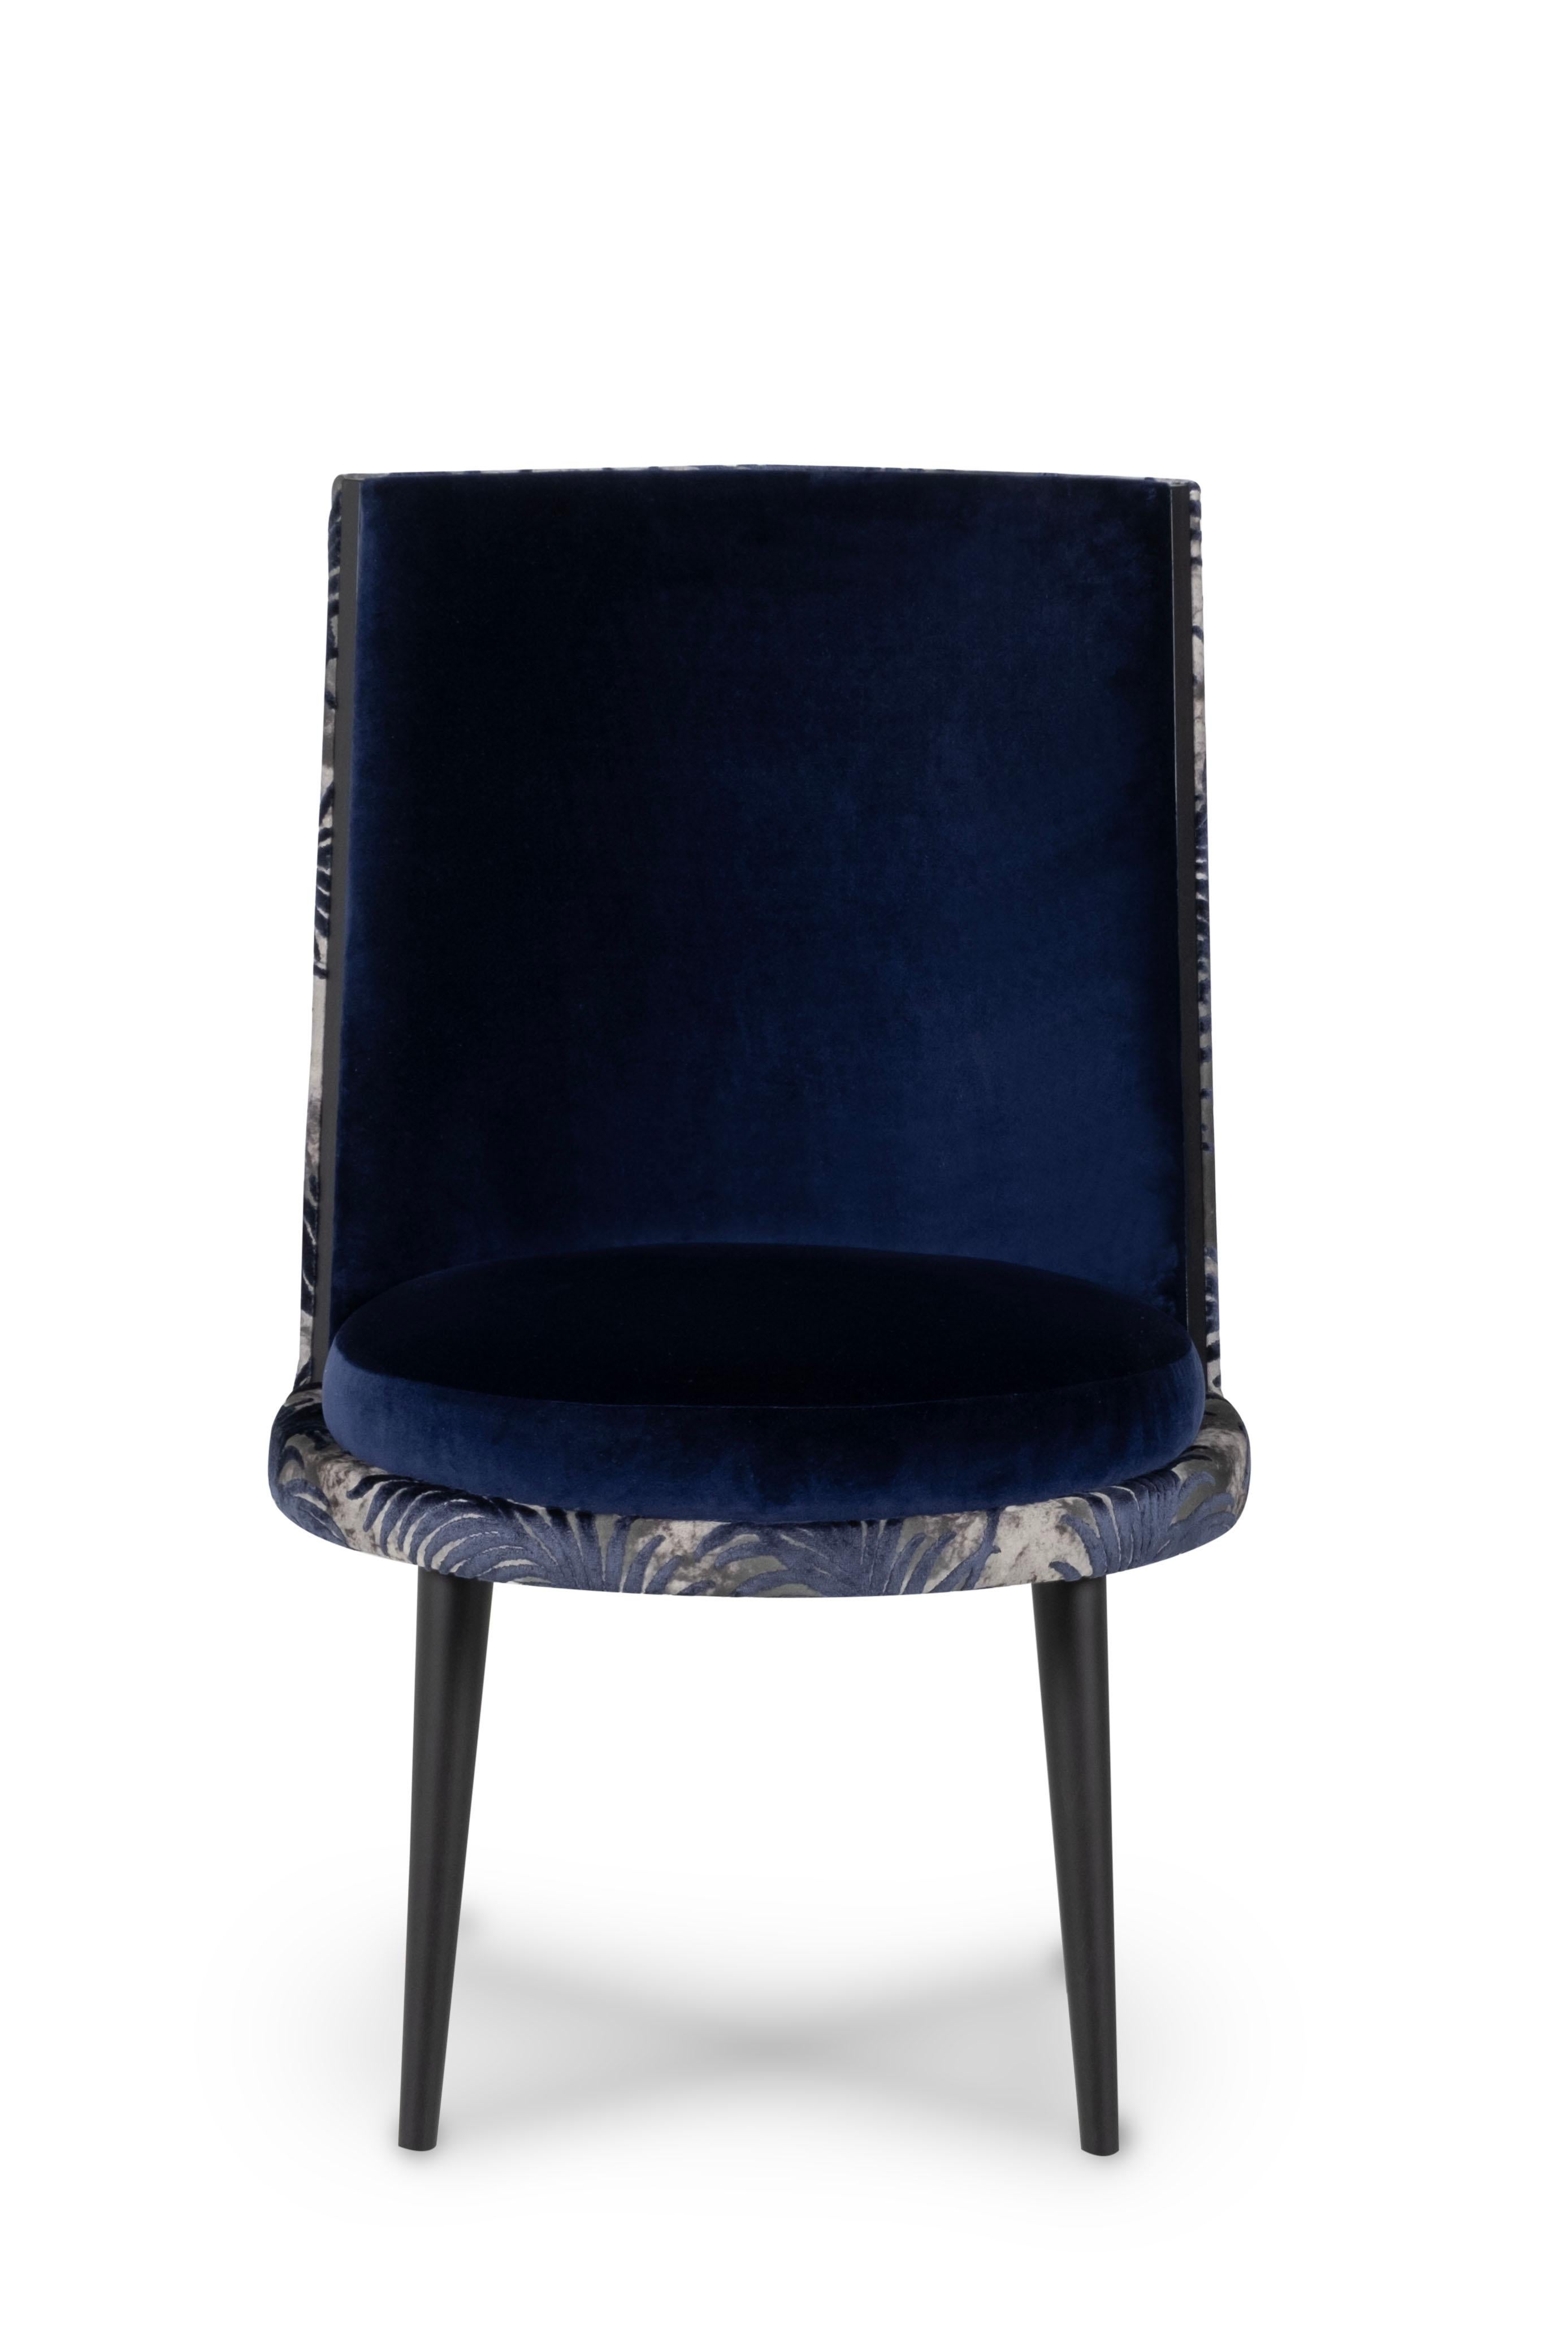 Chaise De Castro, Collection S, fabriquée à la main au Portugal - Europe par GF Modern.

La chaise de salle à manger De Castro est un hommage à l'une des plus remarquables histoires d'amour portugaises, célébrant la sérénité et la délicatesse d'Inês